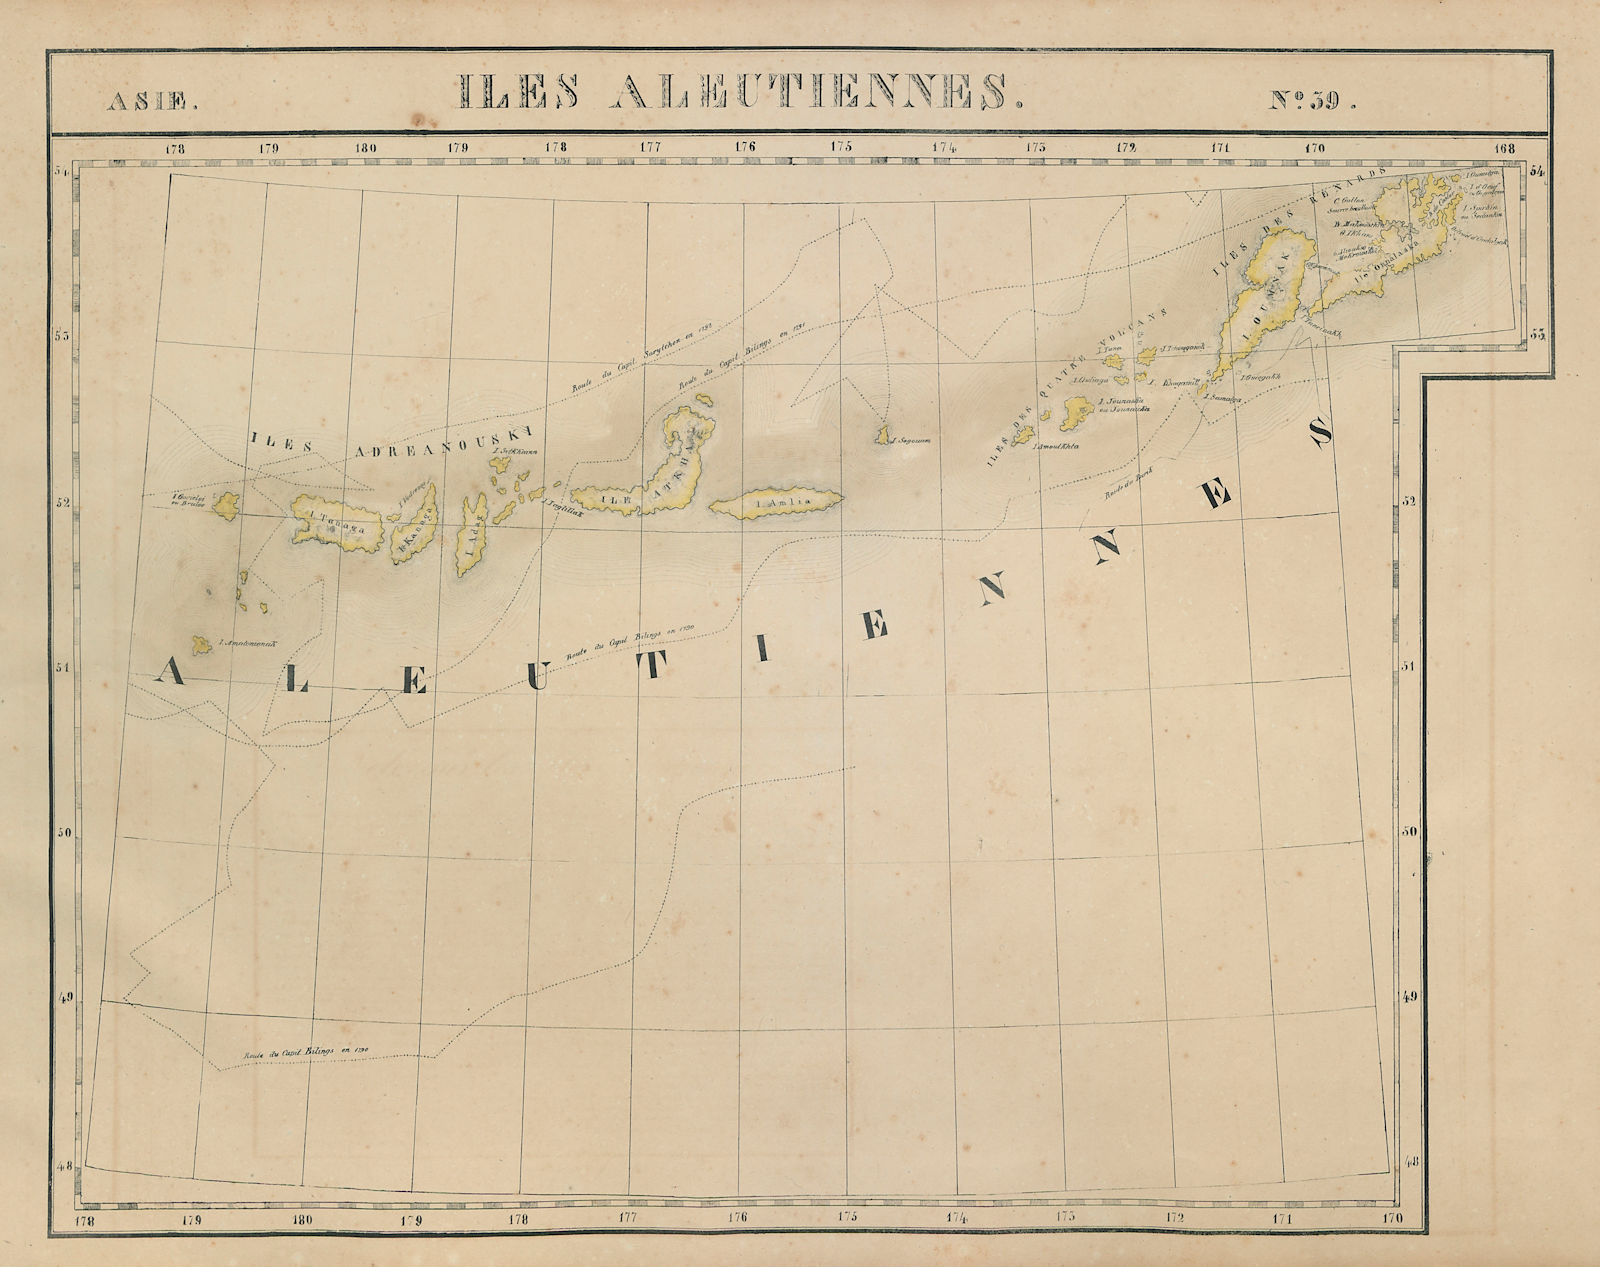 Asie. Iles Aleutiennes #39 Aleutian Islands, Alaska. VANDERMAELEN 1827 old map